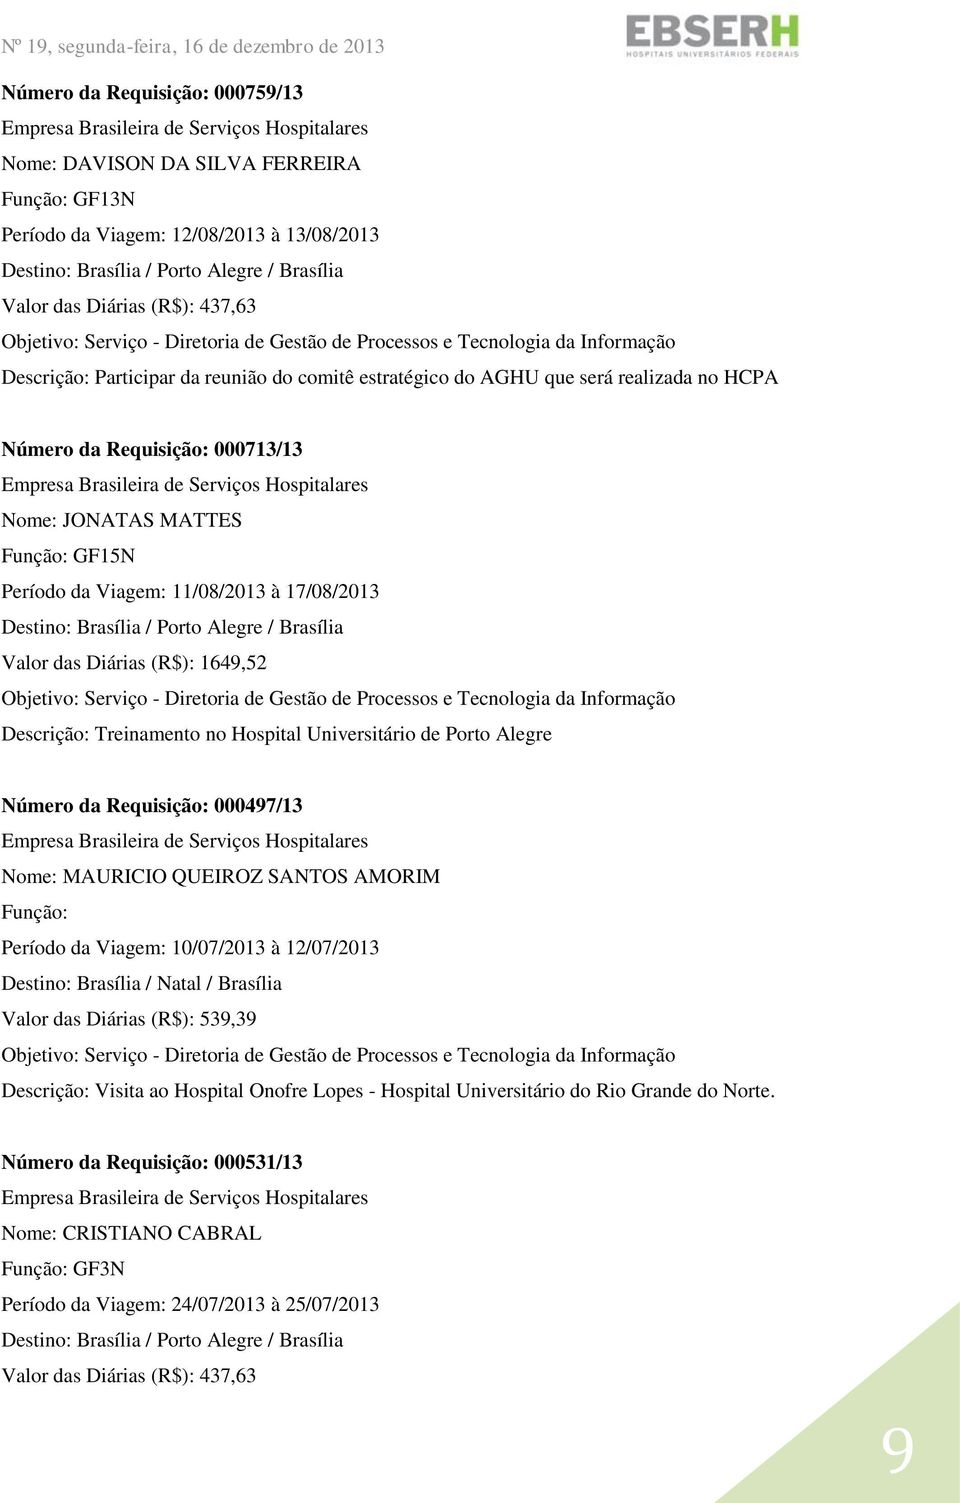 Hospital Universitário de Porto Alegre Número da Requisição: 000497/13 Nome: MAURICIO QUEIROZ SANTOS AMORIM Período da Viagem: 10/07/2013 à 12/07/2013 Destino: Brasília / Natal / Brasília Valor das